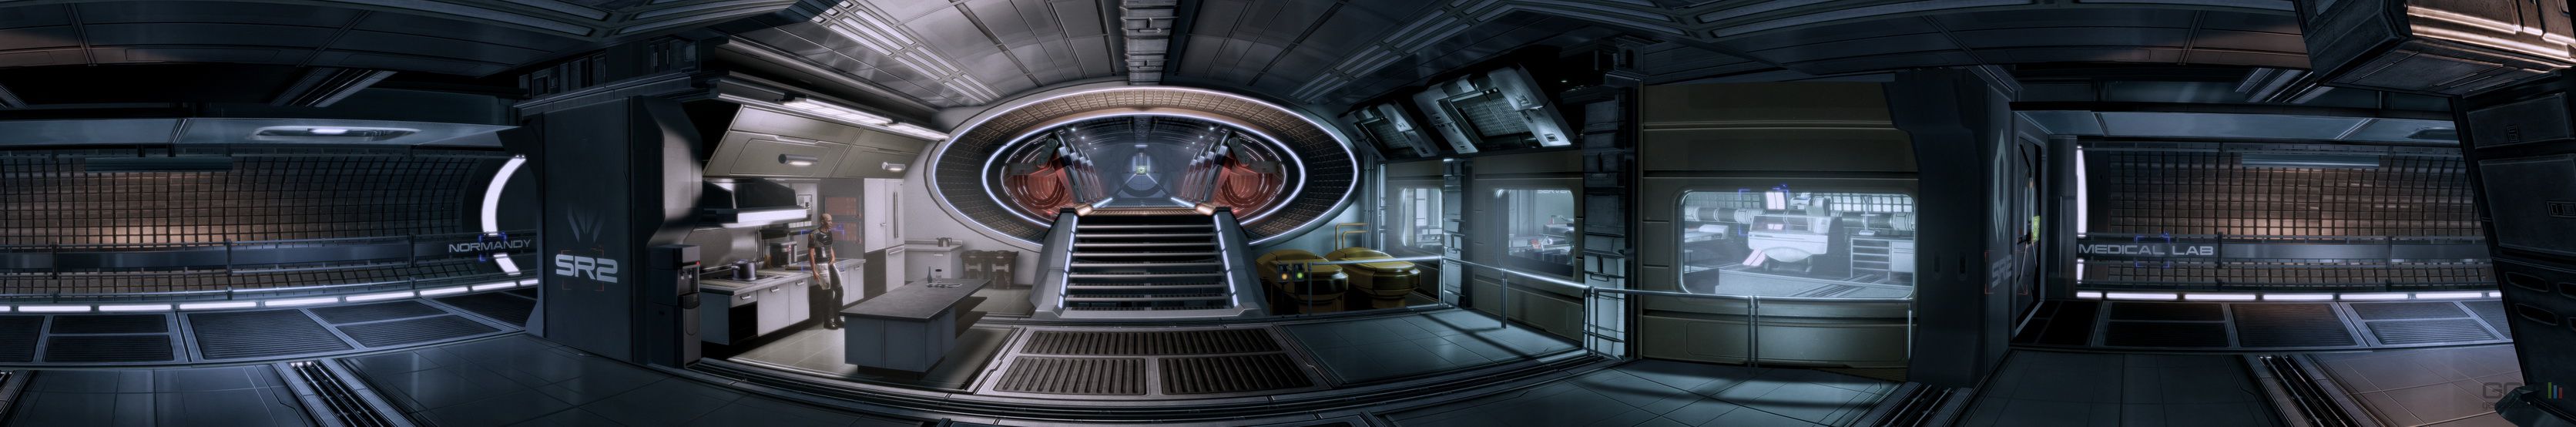 Mass Effect 2 - Image 110